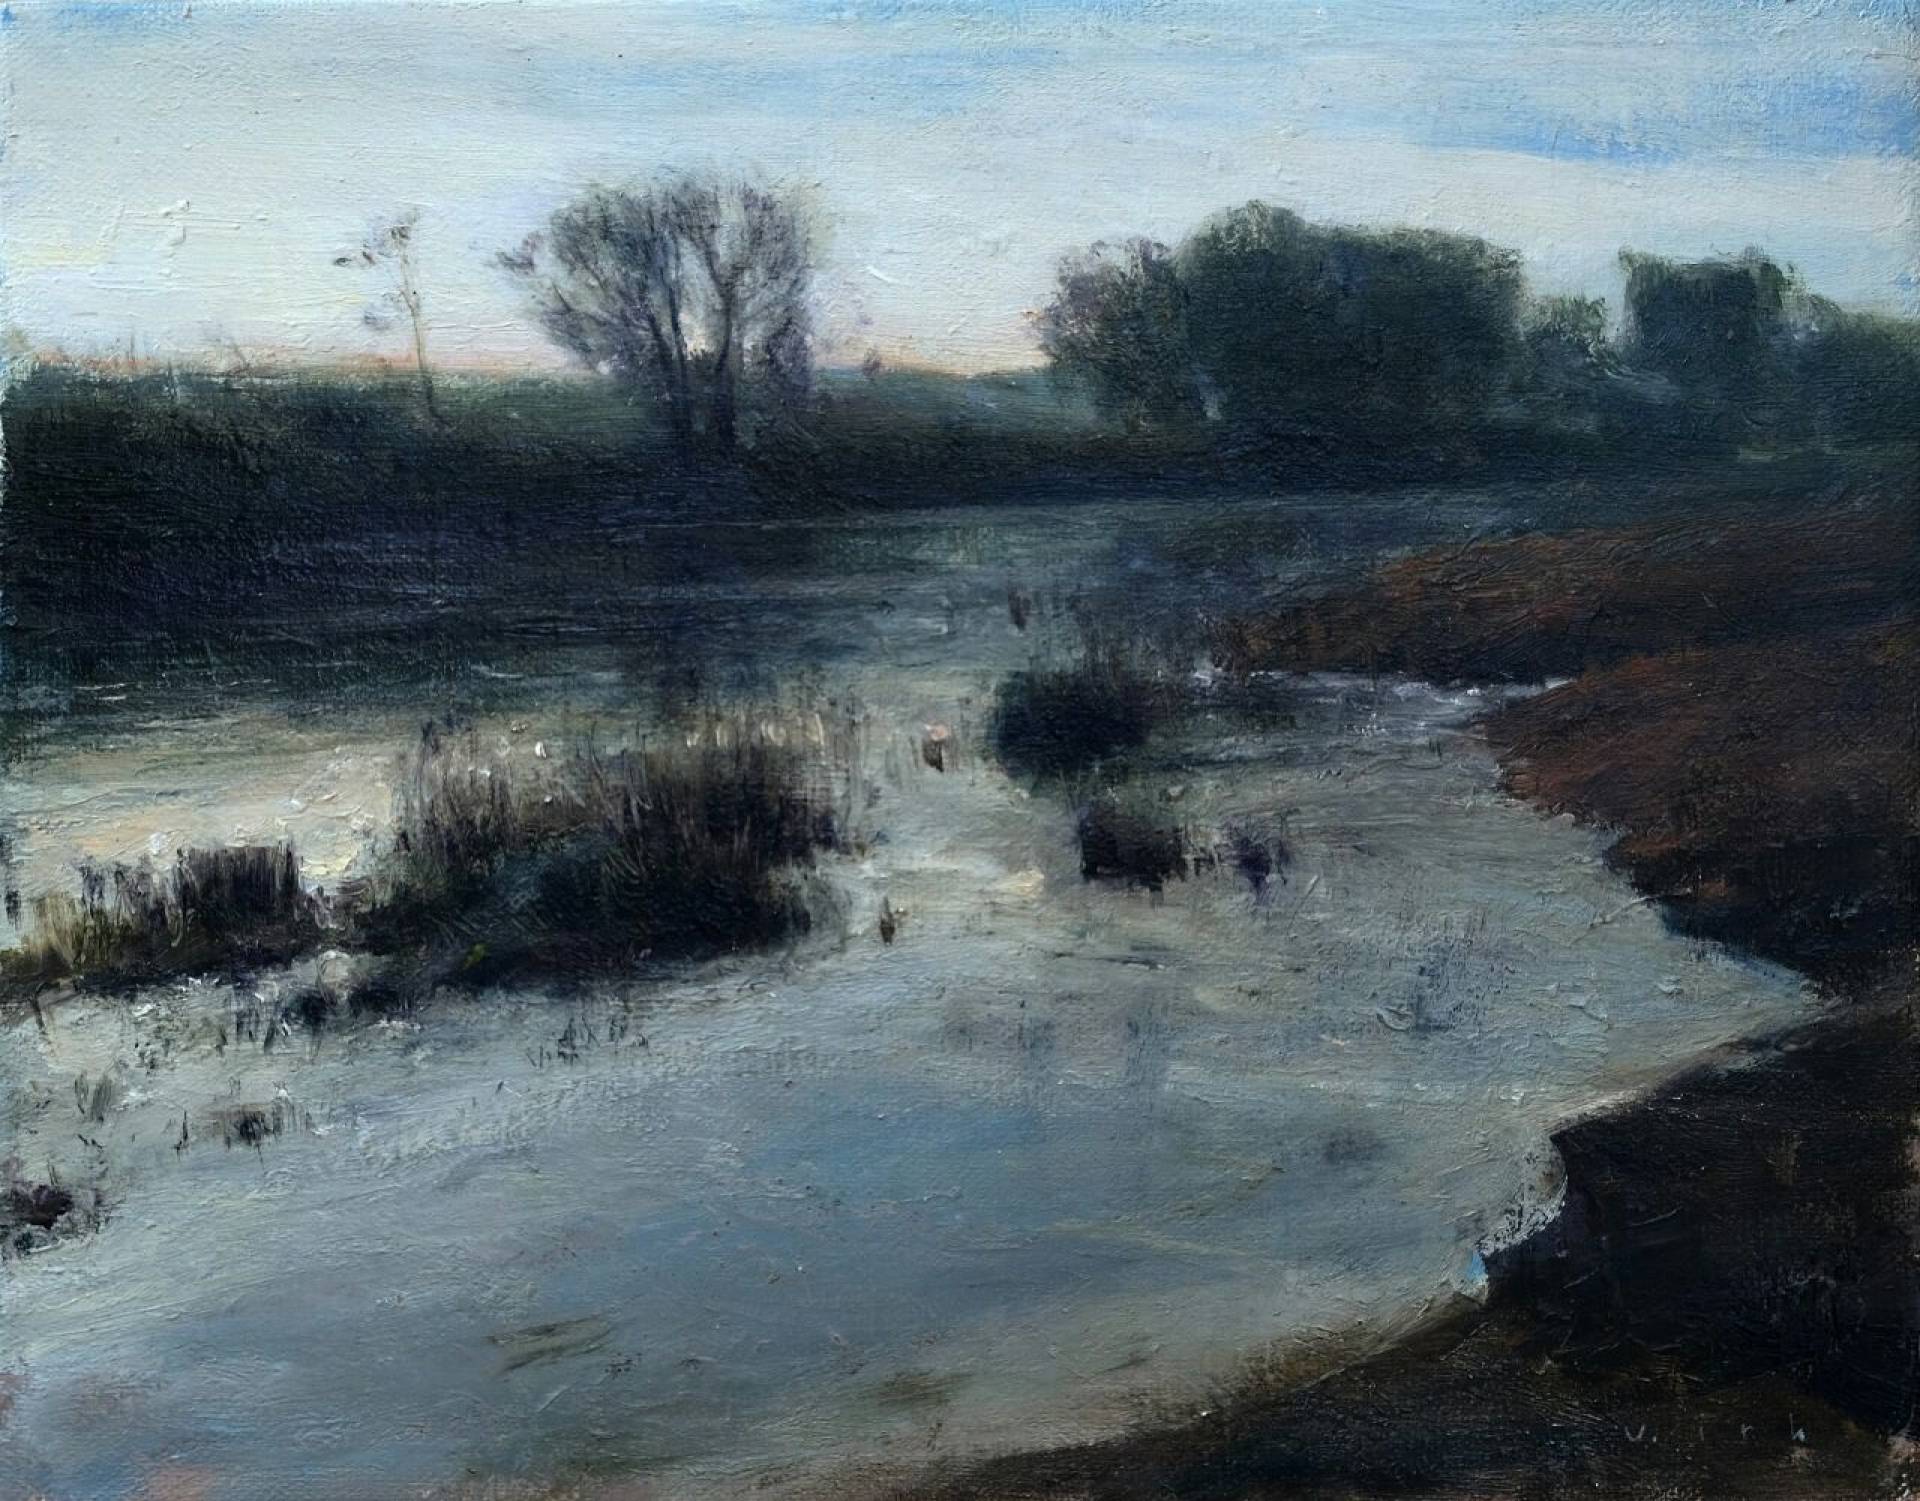 Shore - 1, Vladimir Kirillov, Buy the painting Oil